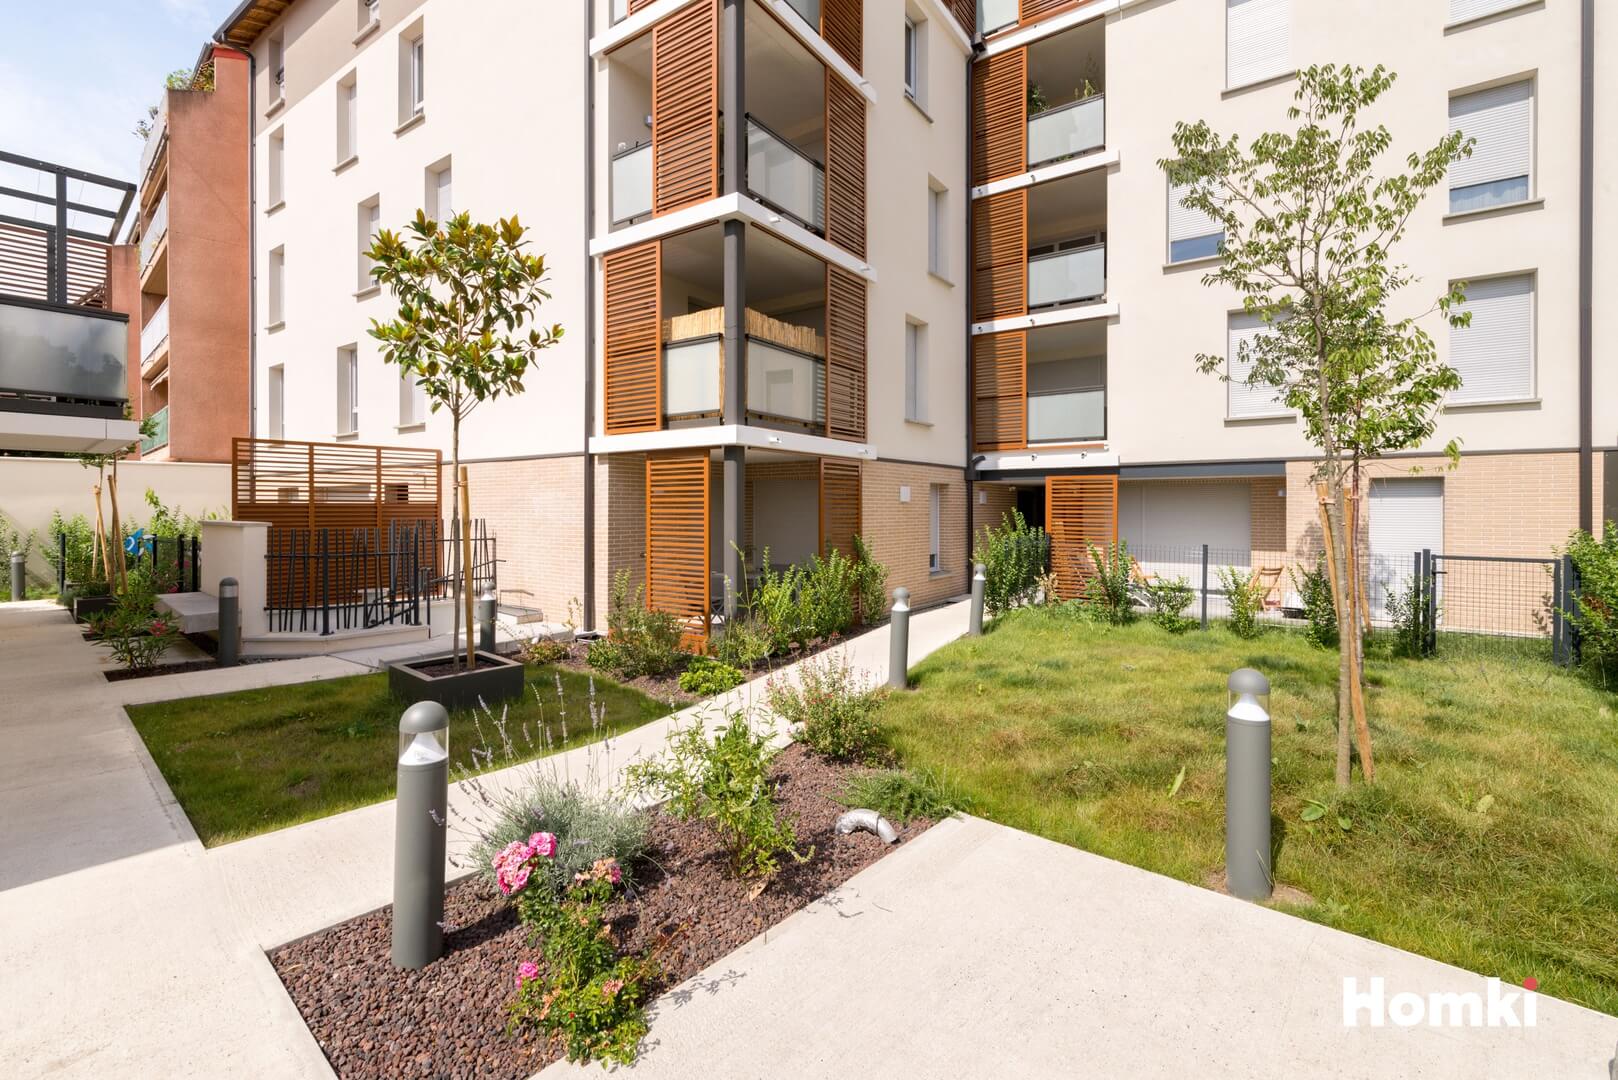 Homki - Vente Appartement  de 65.0 m² à Toulouse 31200